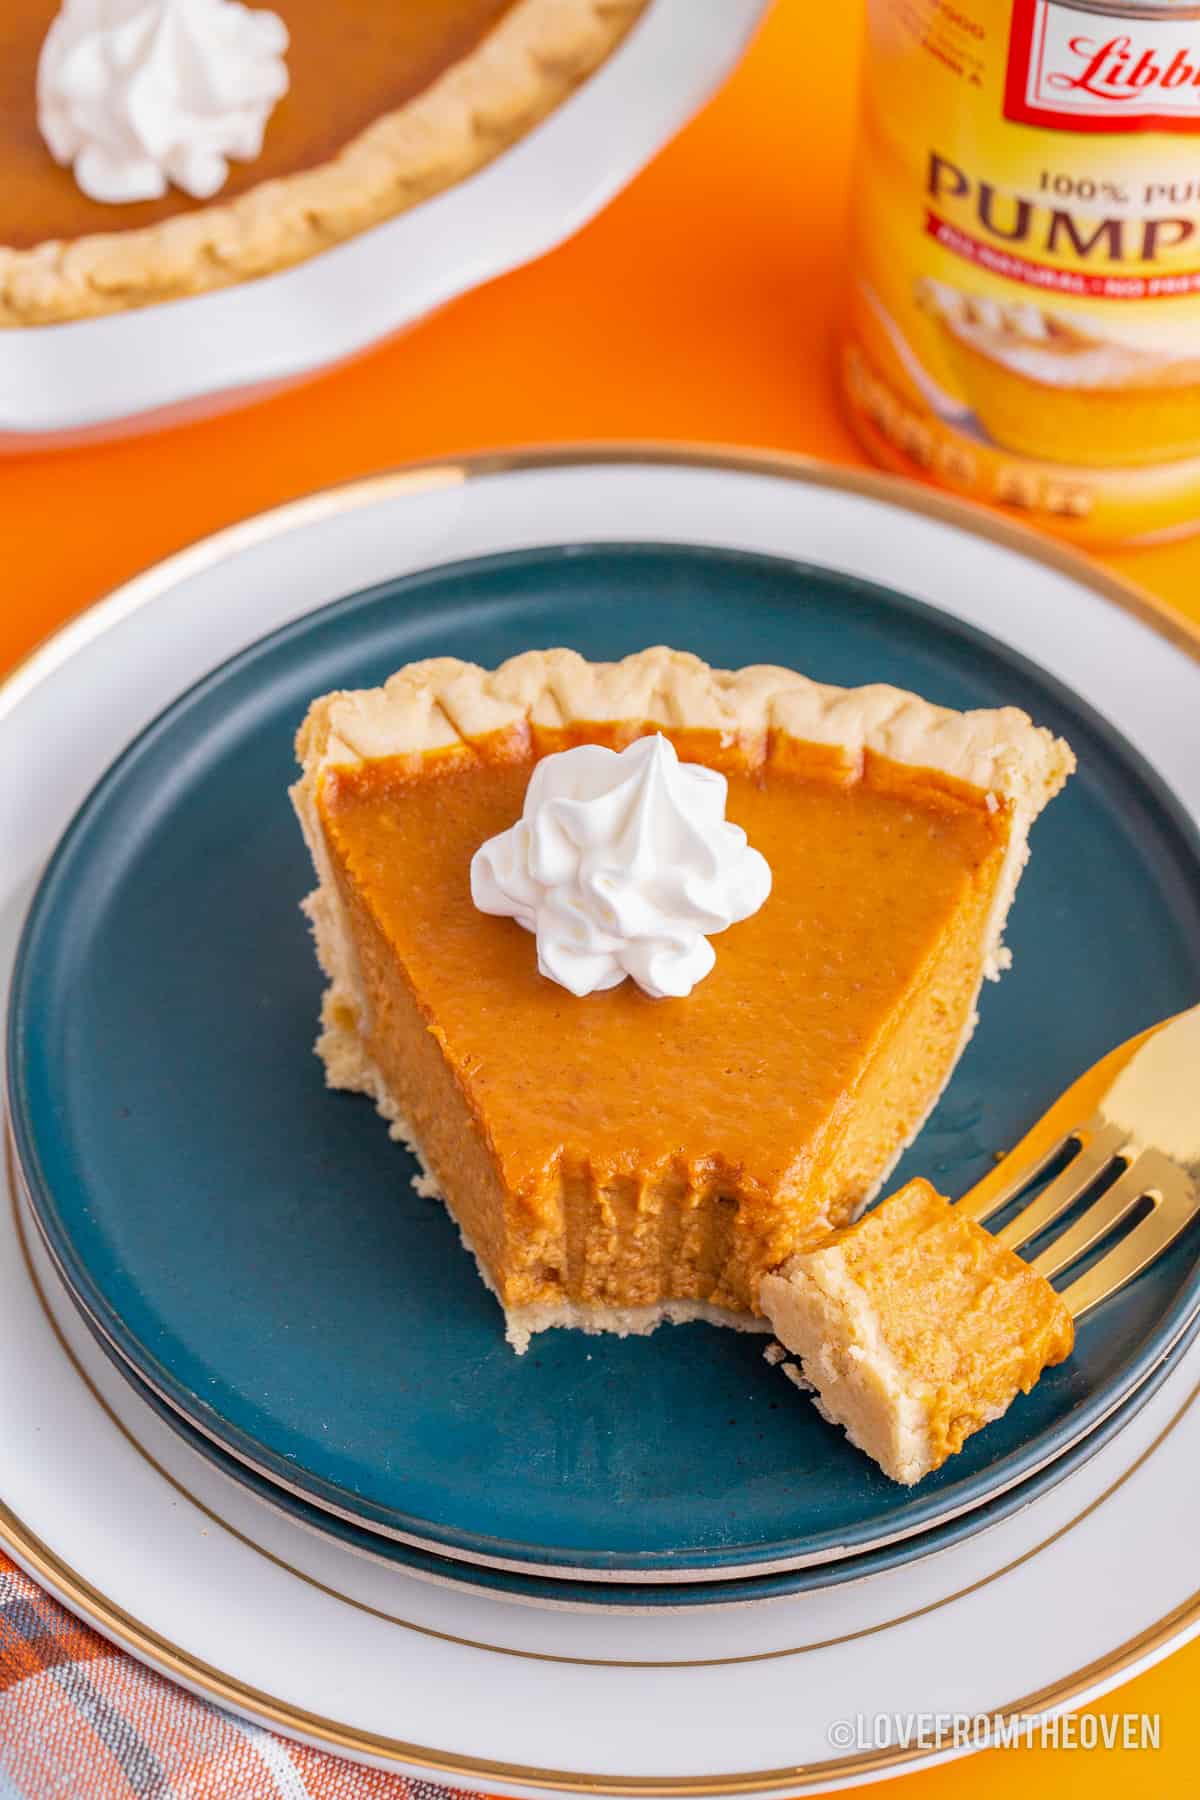 Top 3 Libbys Pumpkin Pie Recipes